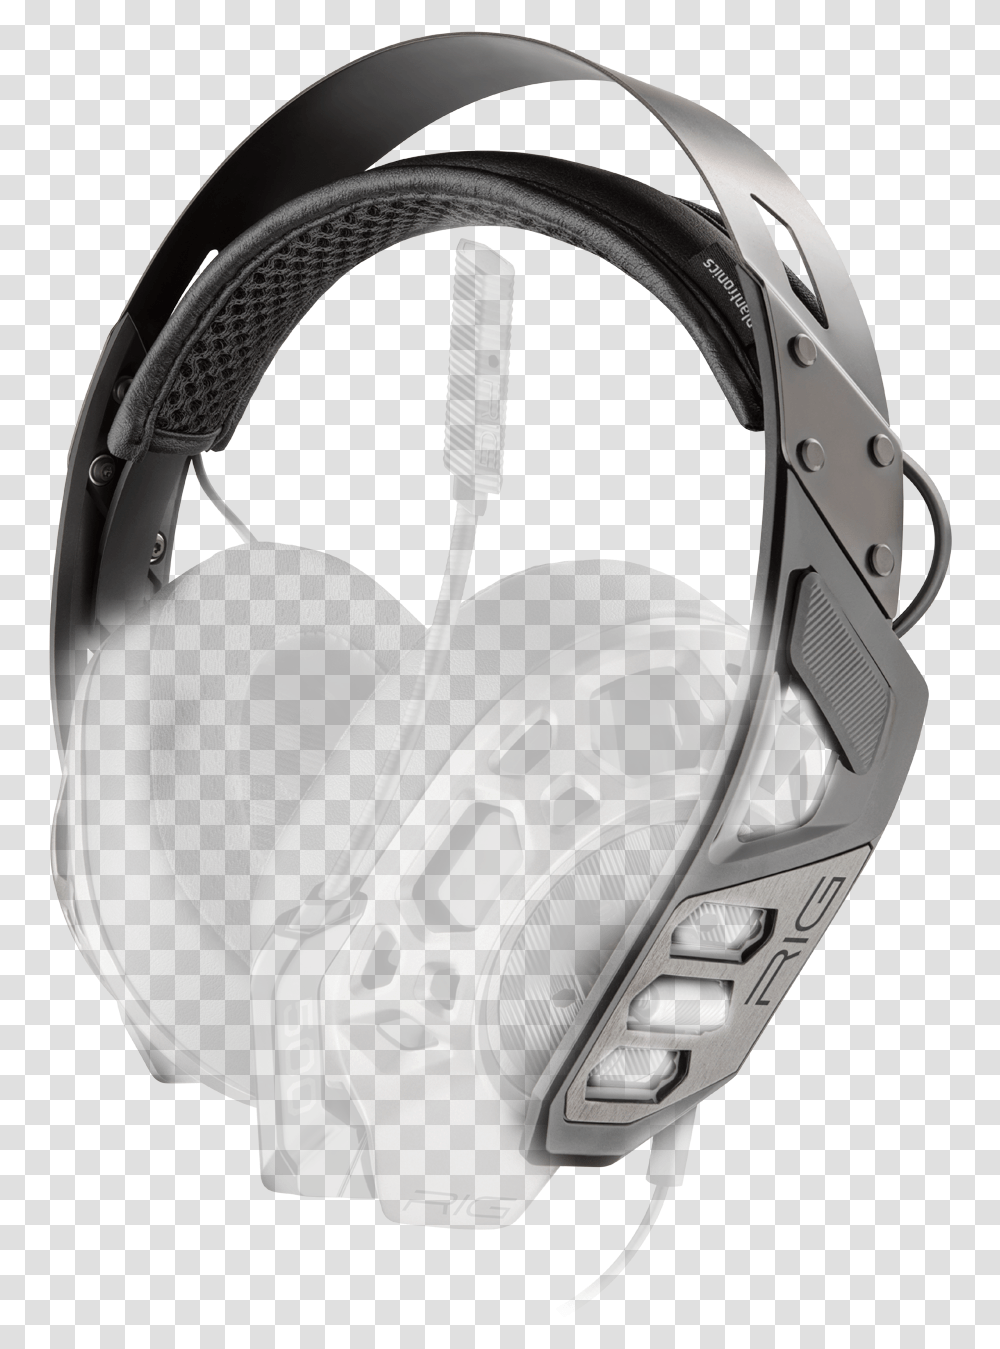 Rig 500 Pro Hx, Helmet, Apparel, Electronics Transparent Png